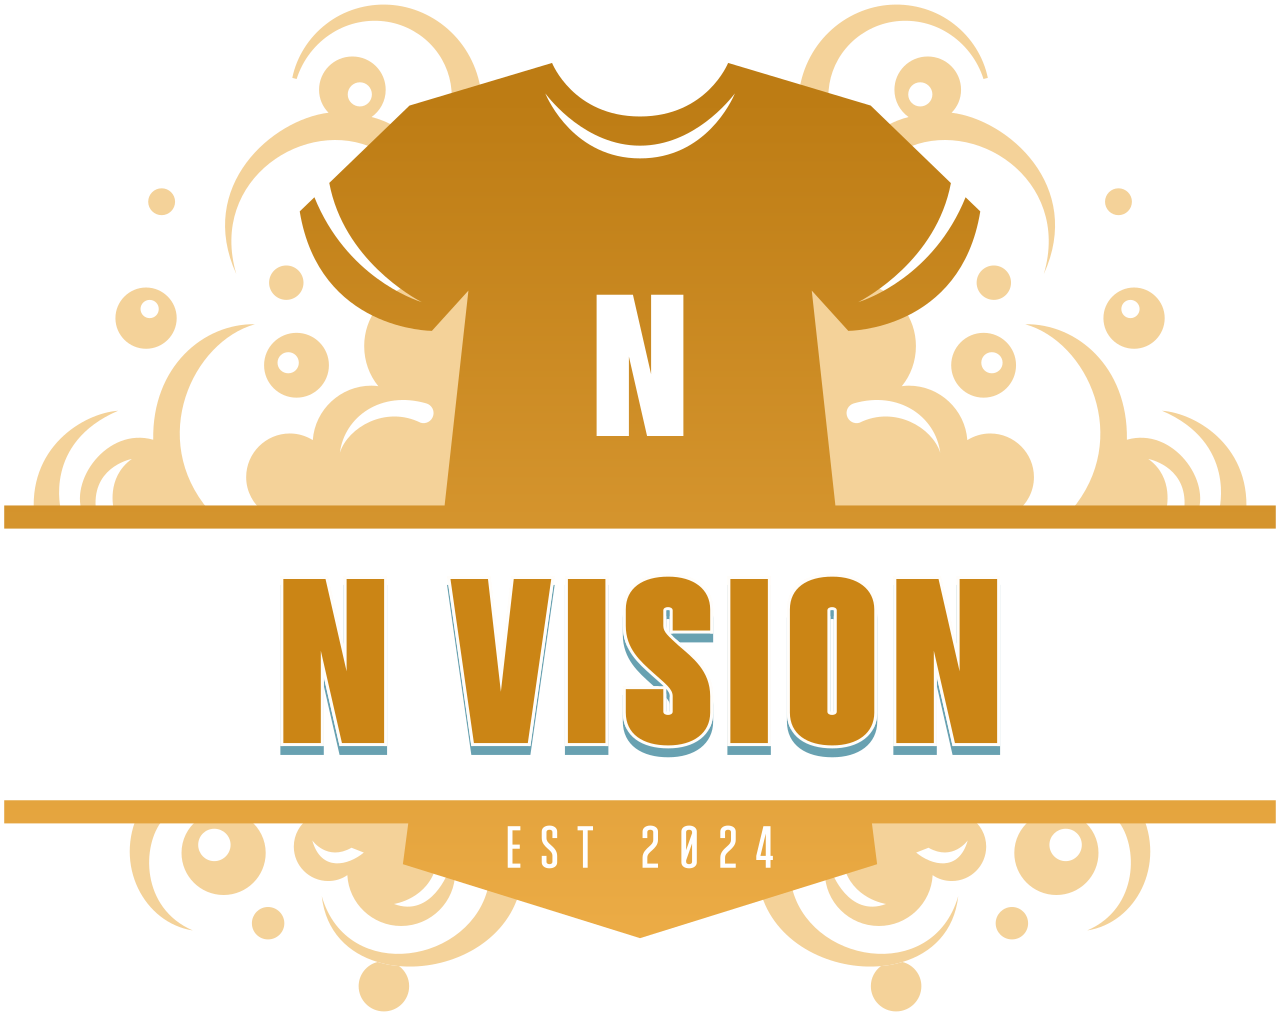 N Vision's logo